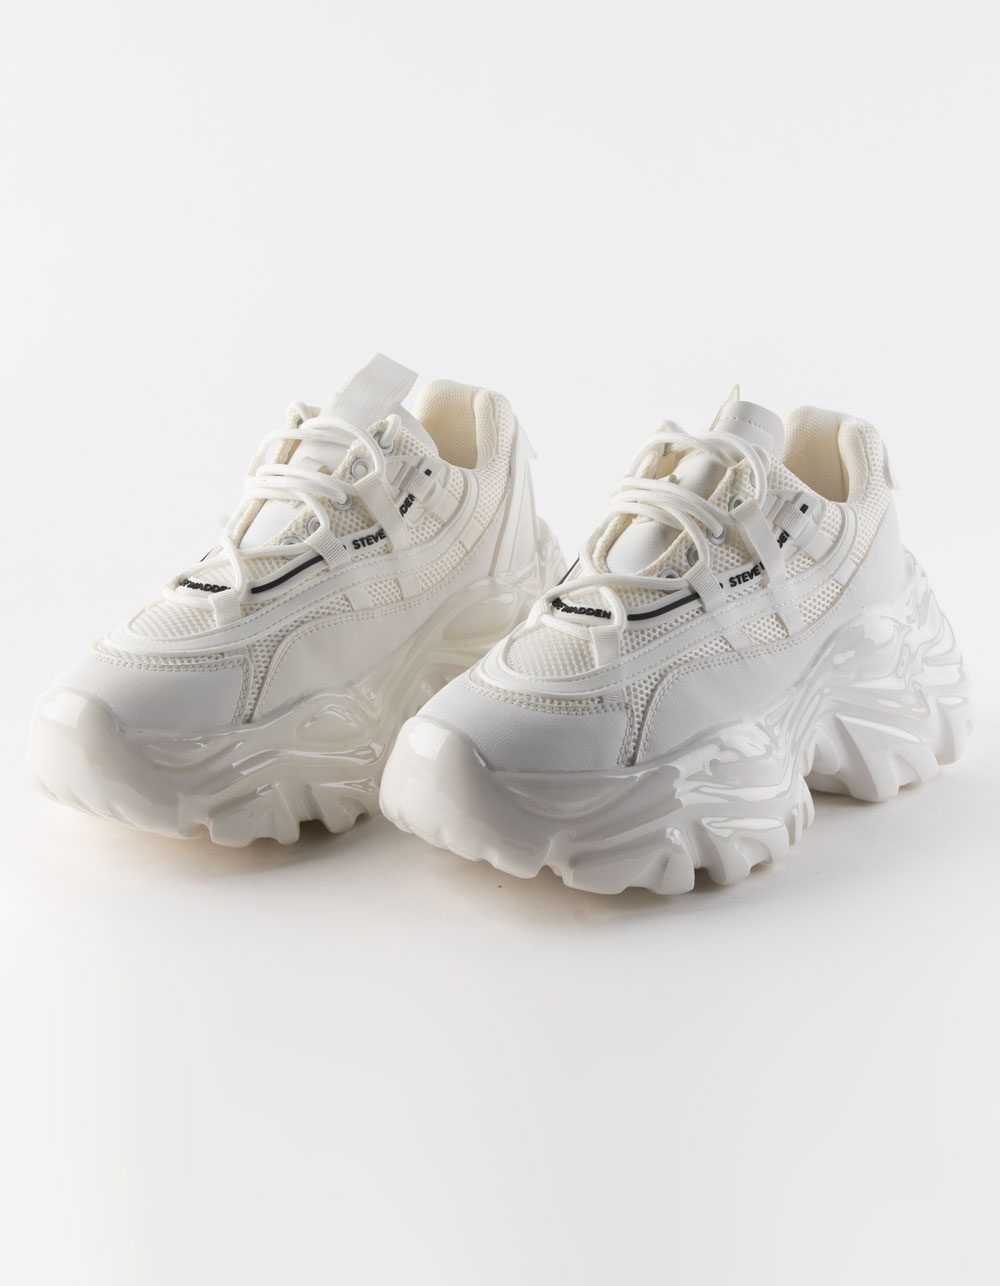 STEVE MADDEN Ecker Womens Shoes - WHITE | Tillys